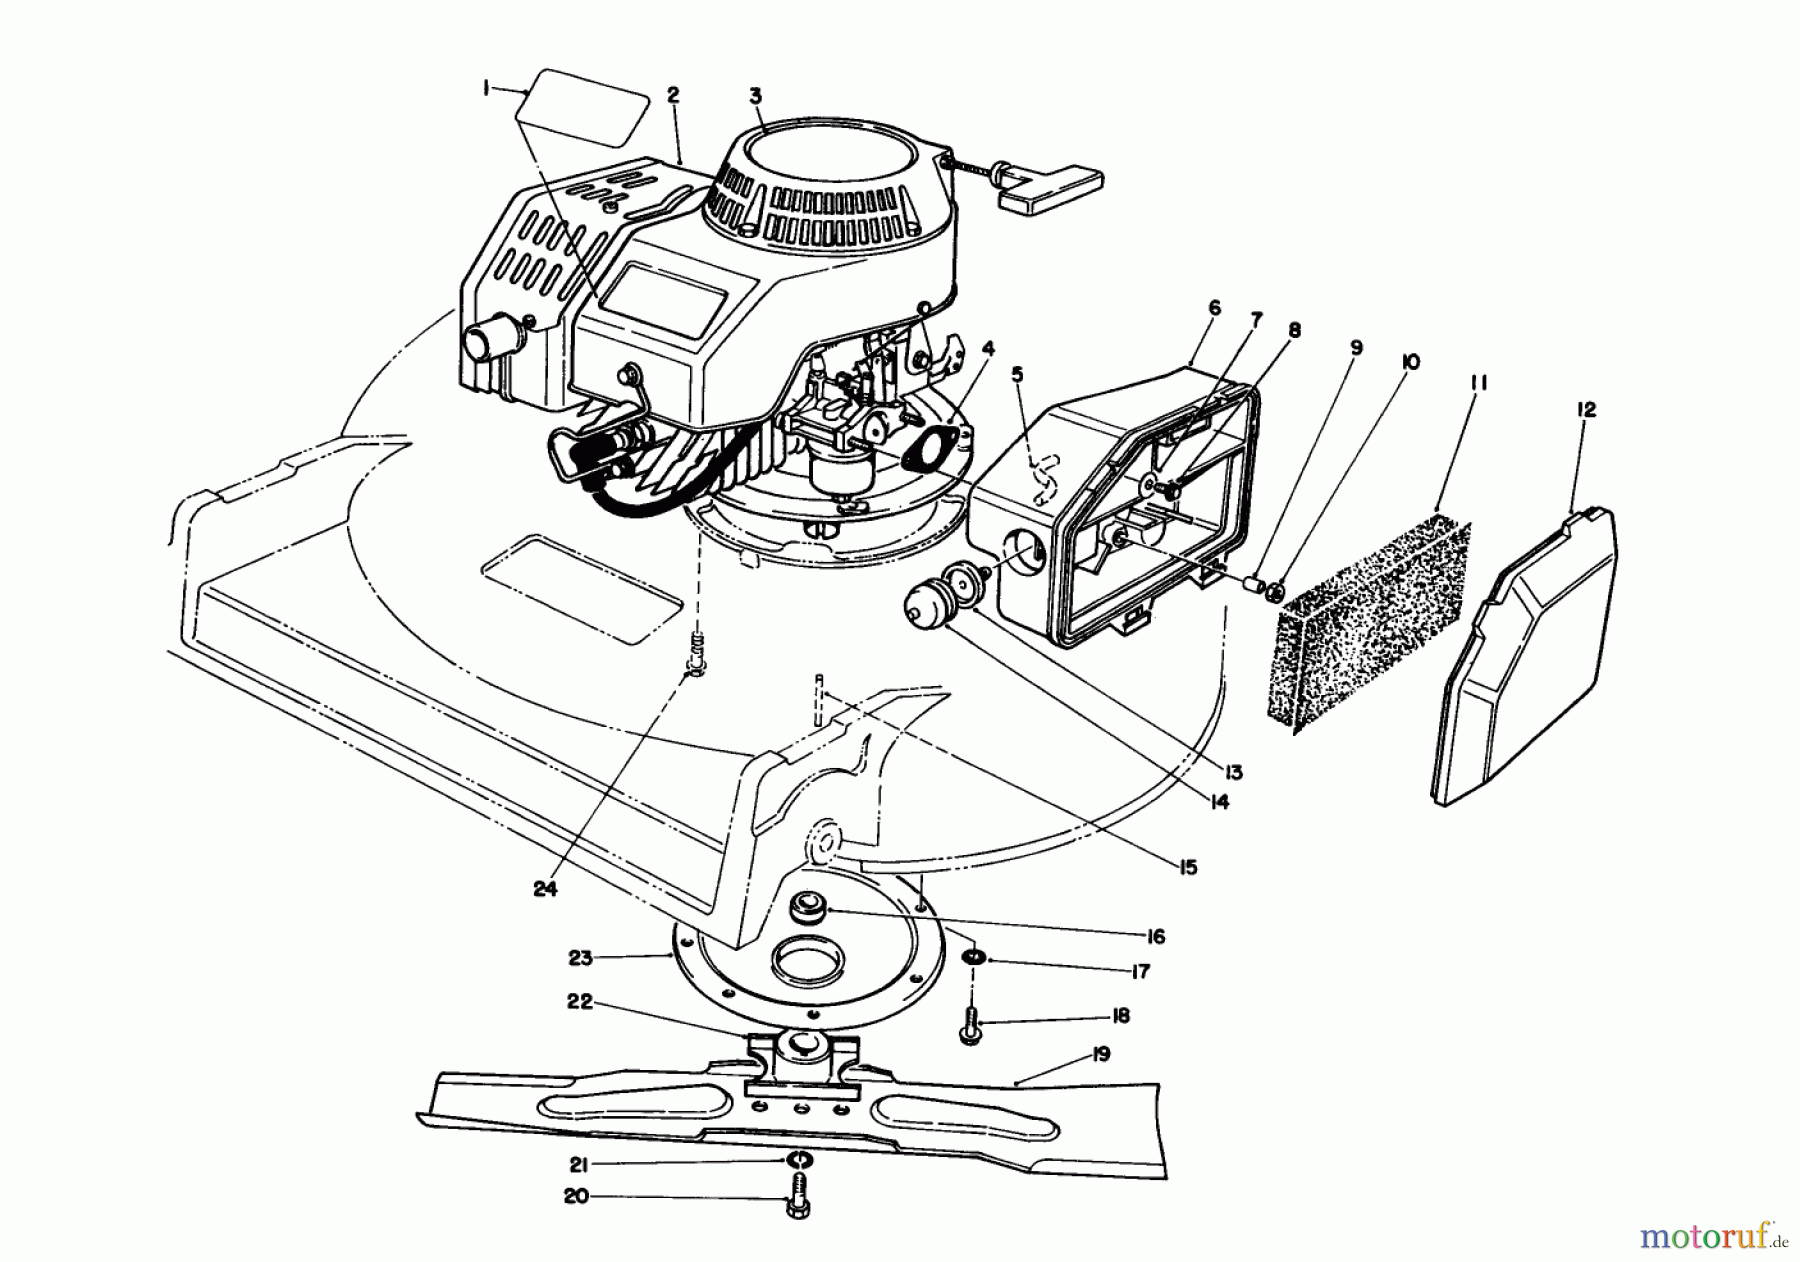  Toro Neu Mowers, Walk-Behind Seite 2 22035 - Toro Lawnmower, 1990 (0000001-0999999) ENGINE ASSEMBLY (MODEL 22030)